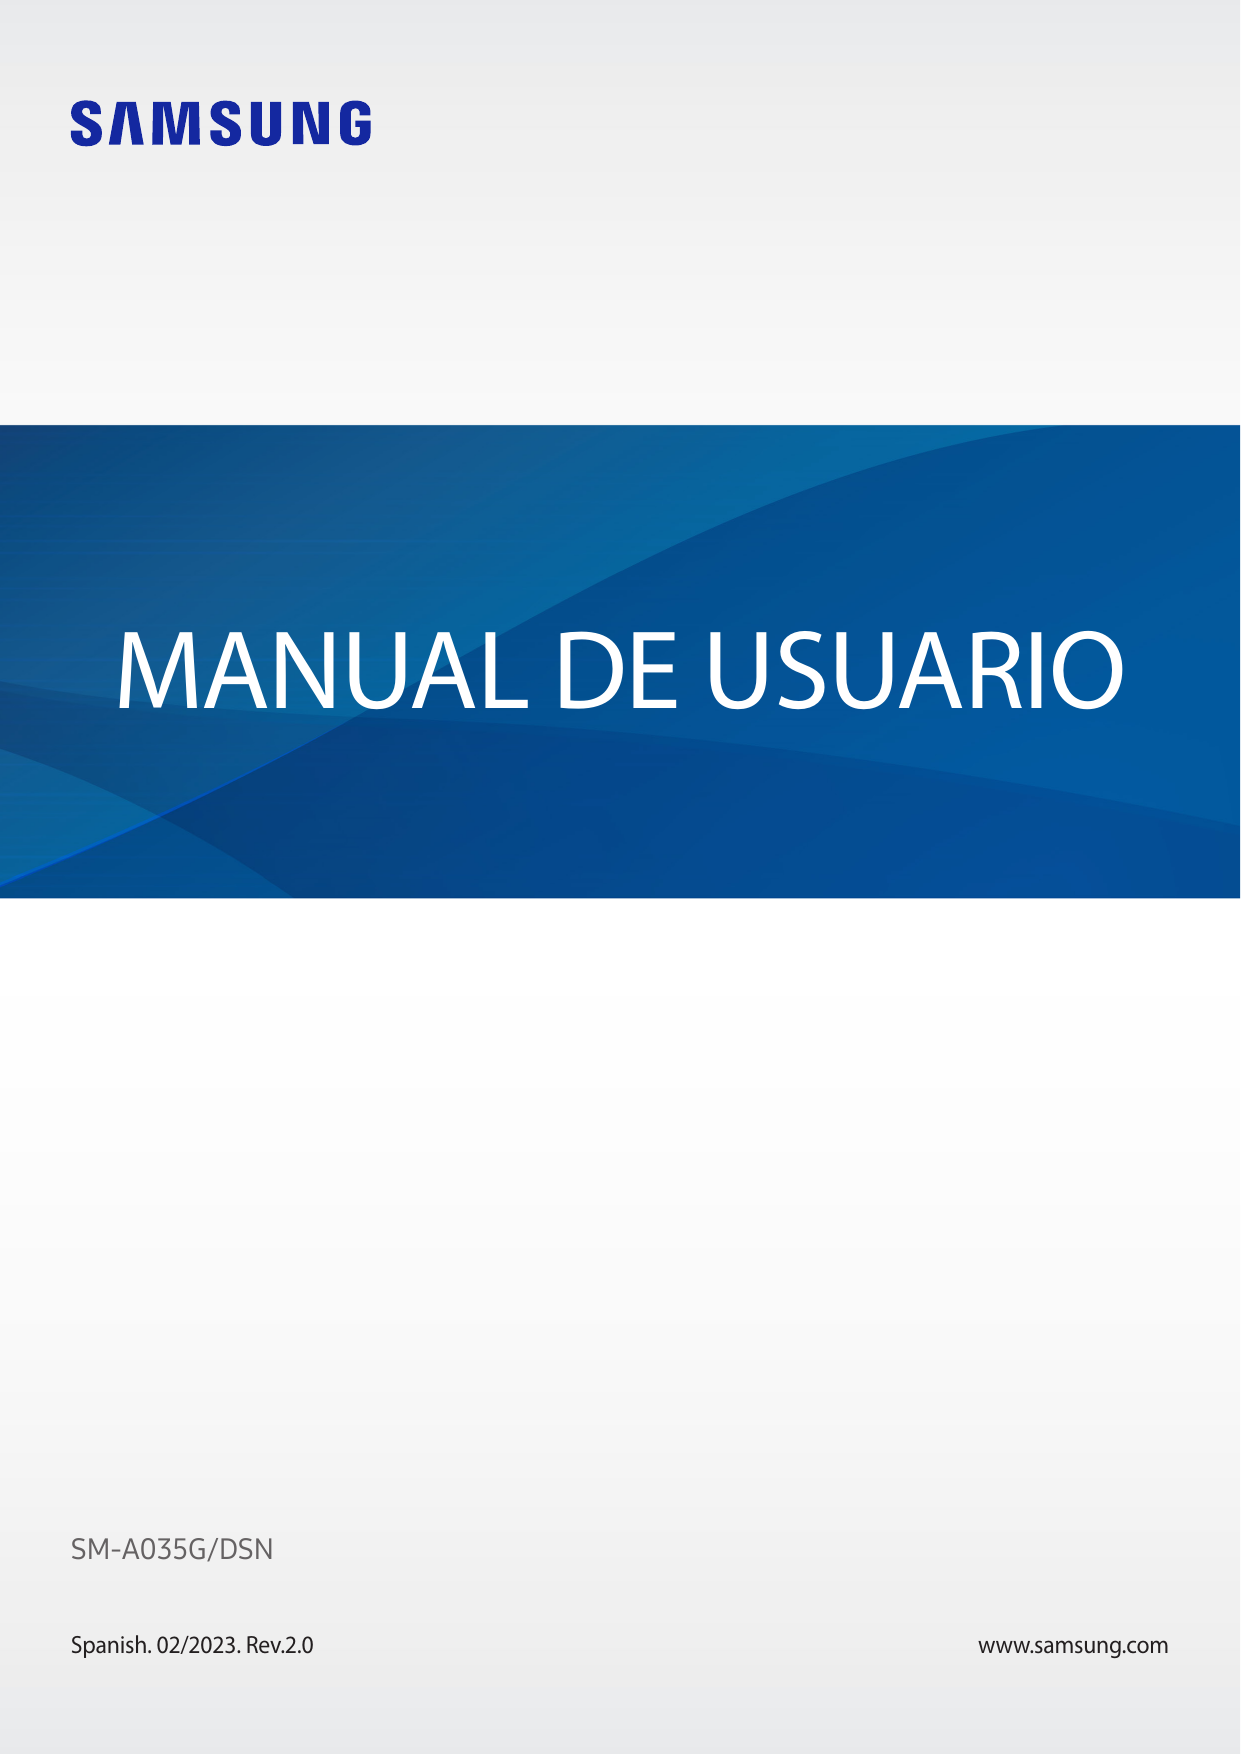 MANUAL DE USUARIOSM-A035G/DSNSpanish. 02/2023. Rev.2.0www.samsung.com